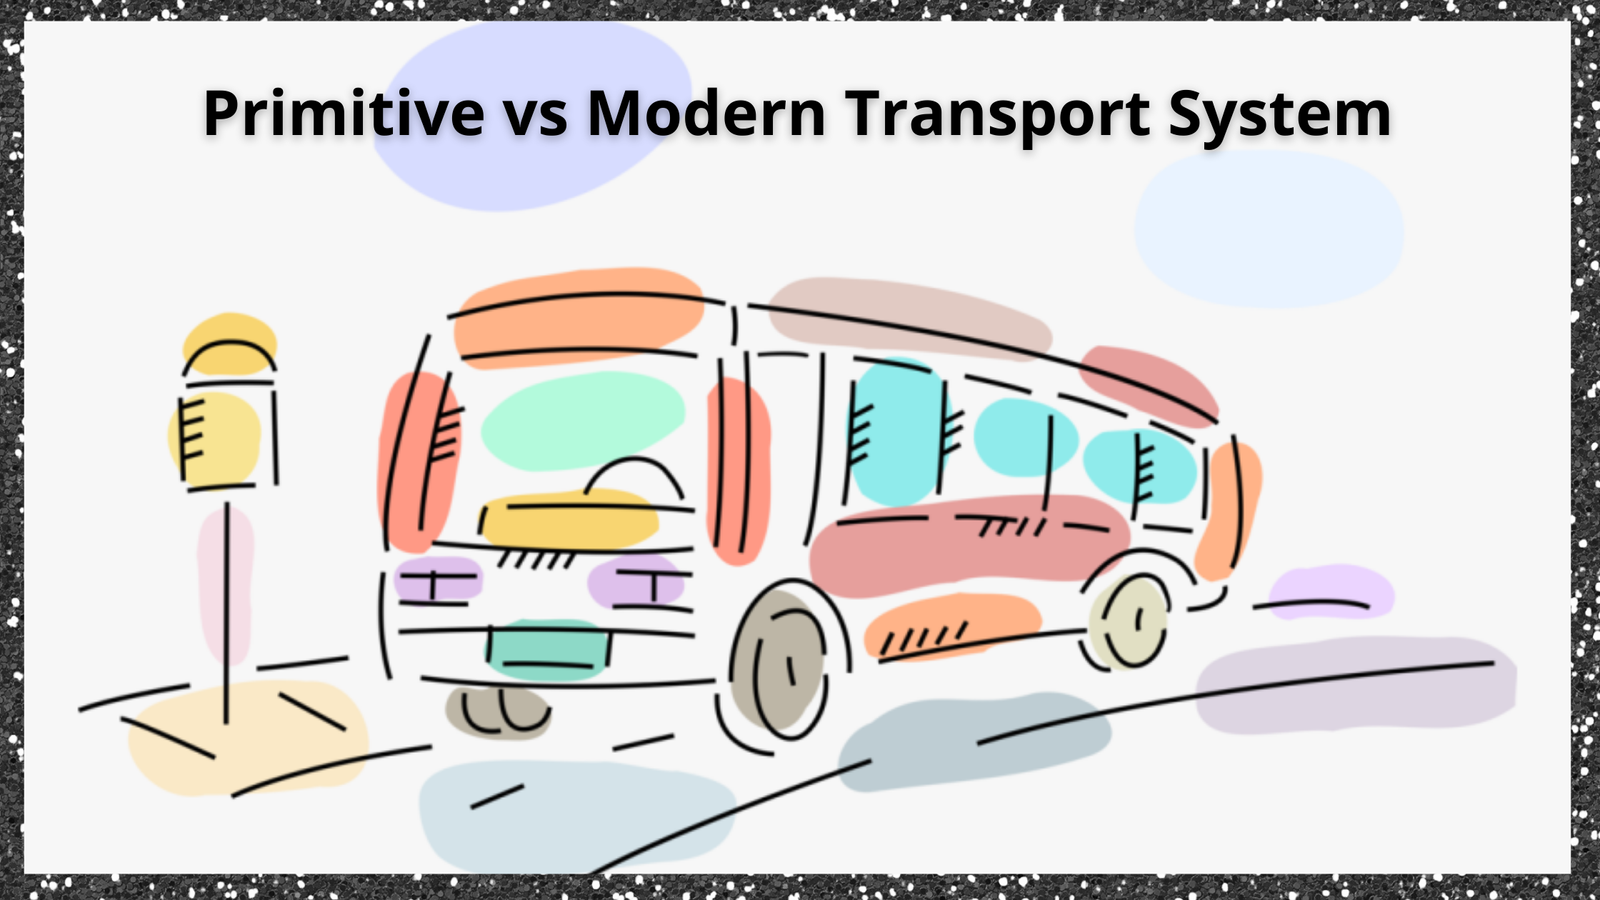 Modern Transport System VS Primitive Transport System